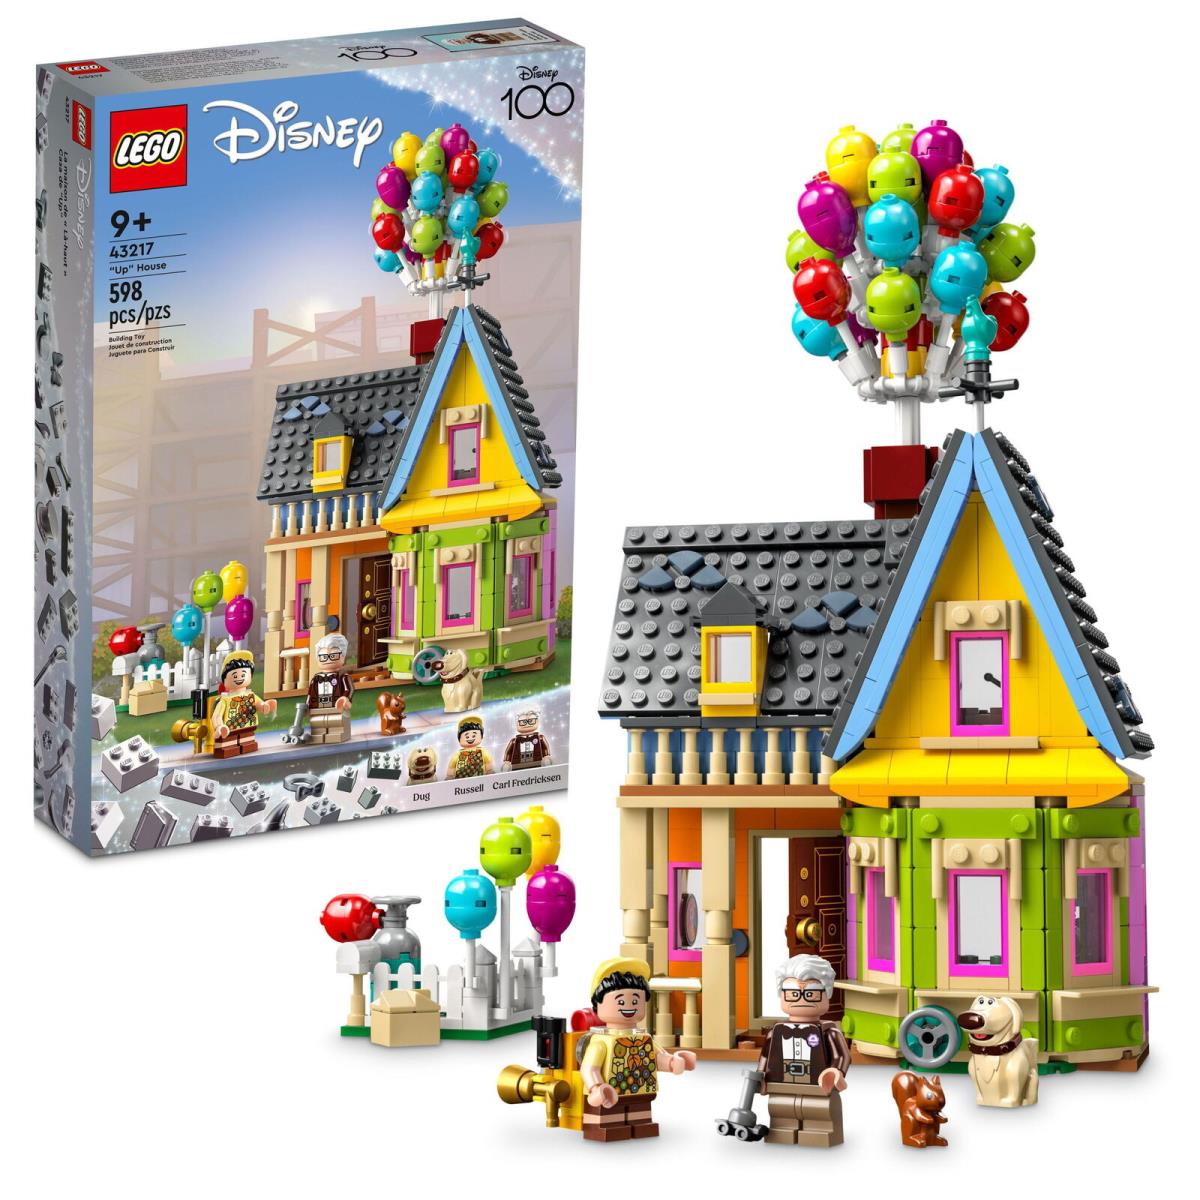 Disney and Pixar Up House 43217 Disney 100 Celebration Building Toy Set For Kids